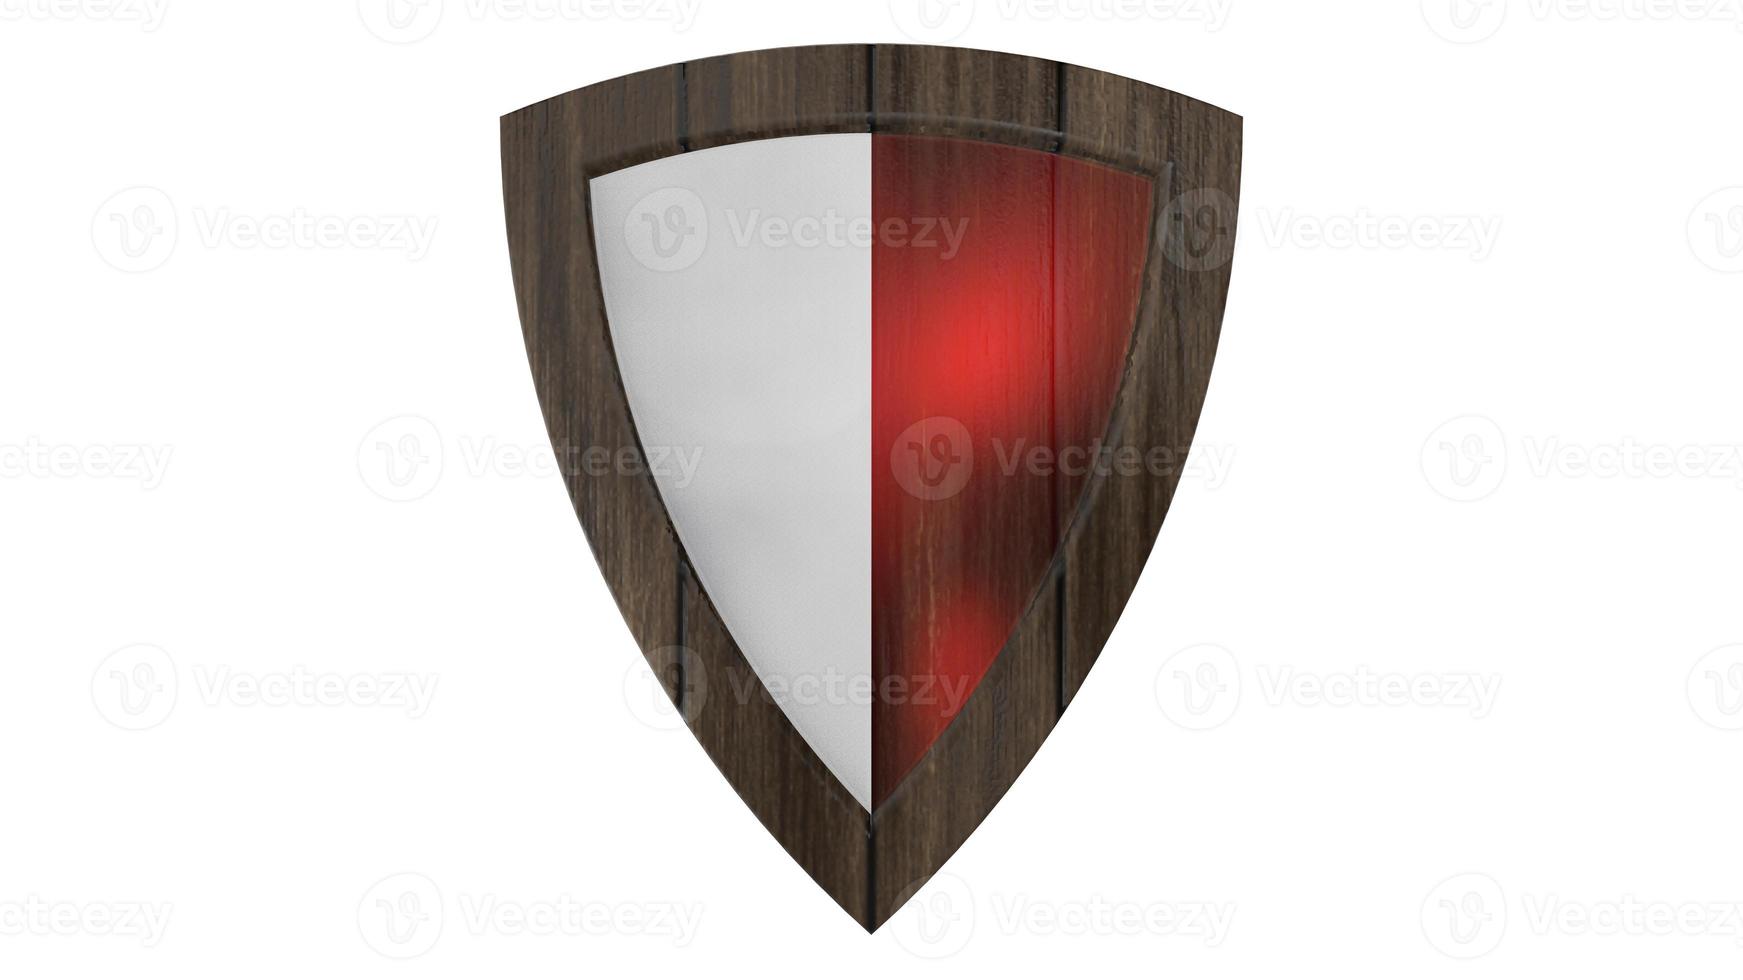 escudo vermelho madeira branca medieval ilustração 3d render foto